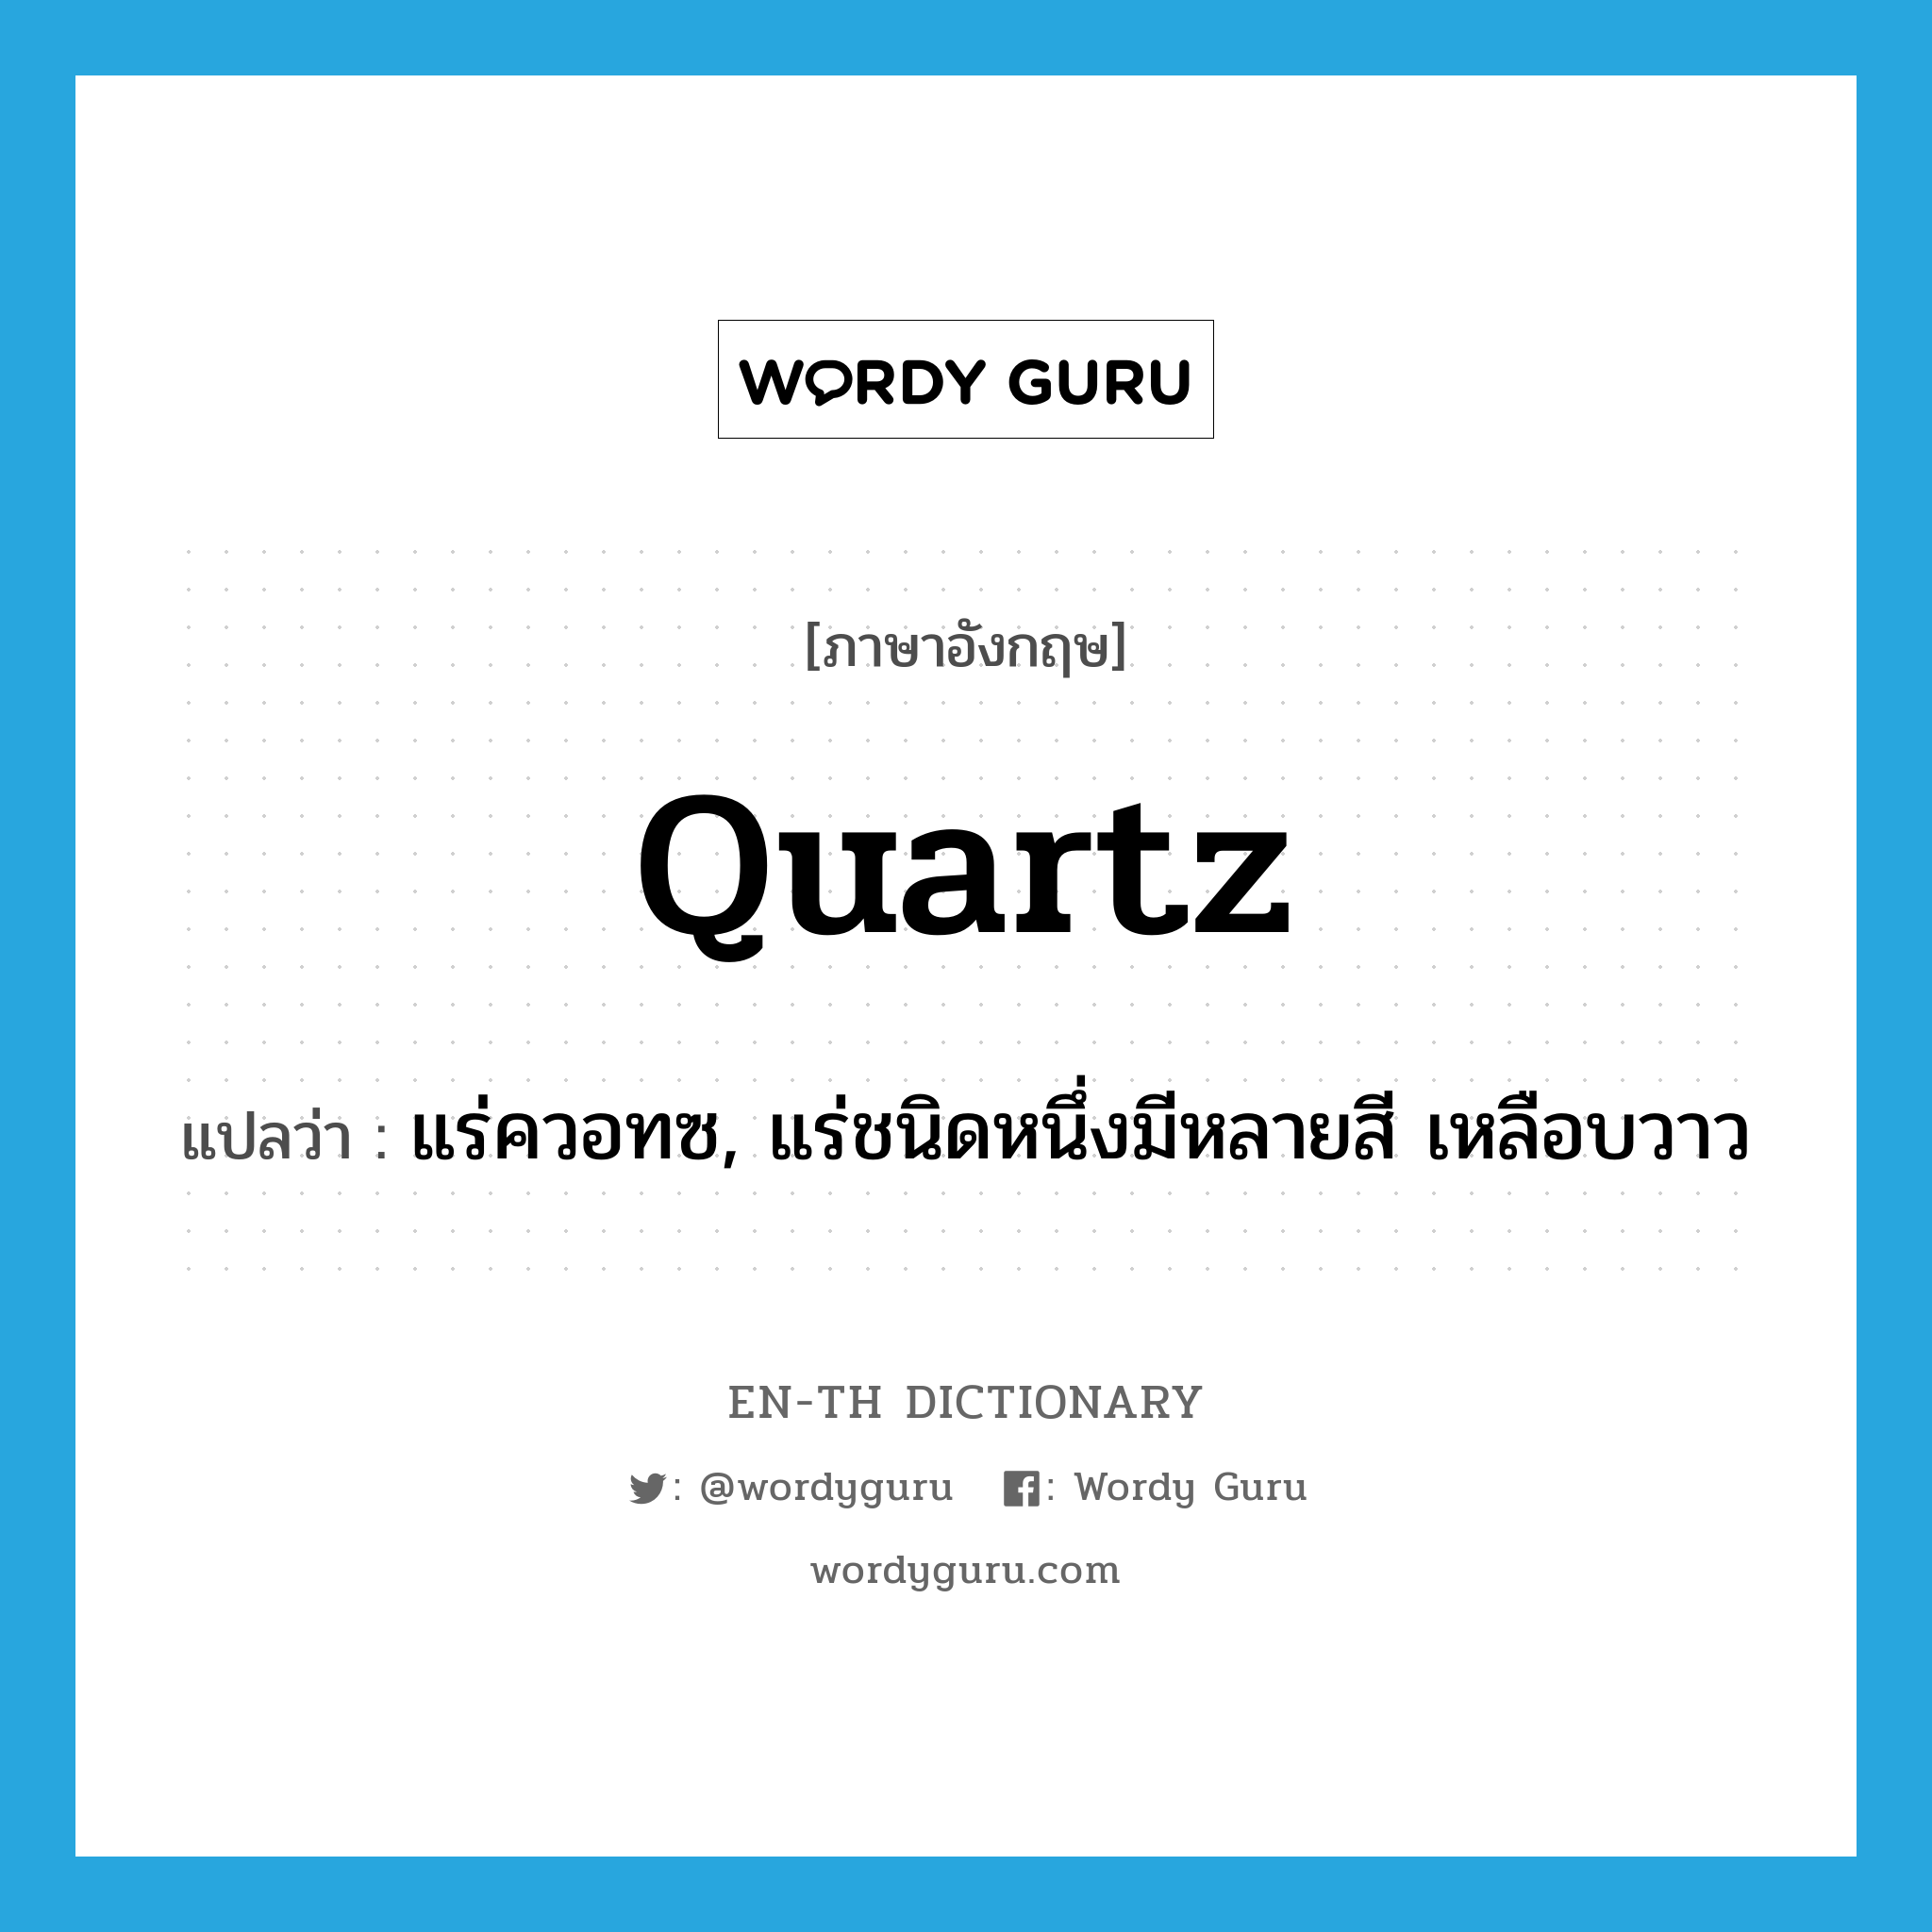 quartz แปลว่า?, คำศัพท์ภาษาอังกฤษ quartz แปลว่า แร่ควอทซ, แร่ชนิดหนึ่งมีหลายสี เหลือบวาว ประเภท N หมวด N